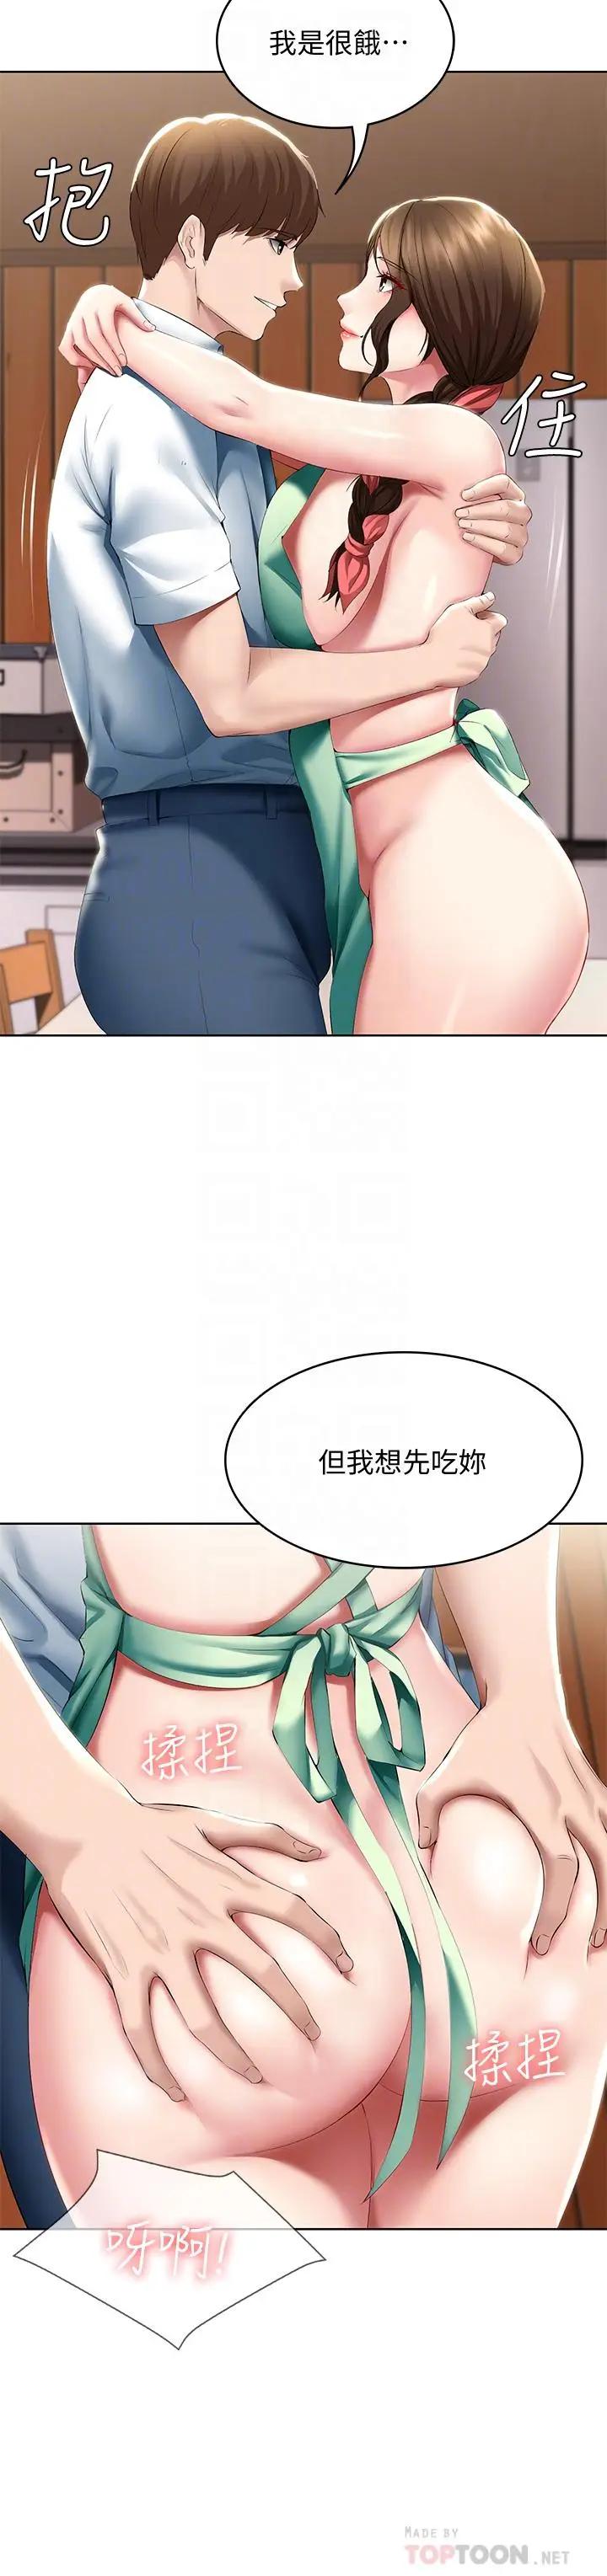 韩国污漫画 寄宿日記 第56话妖艳美静的特别服务 16